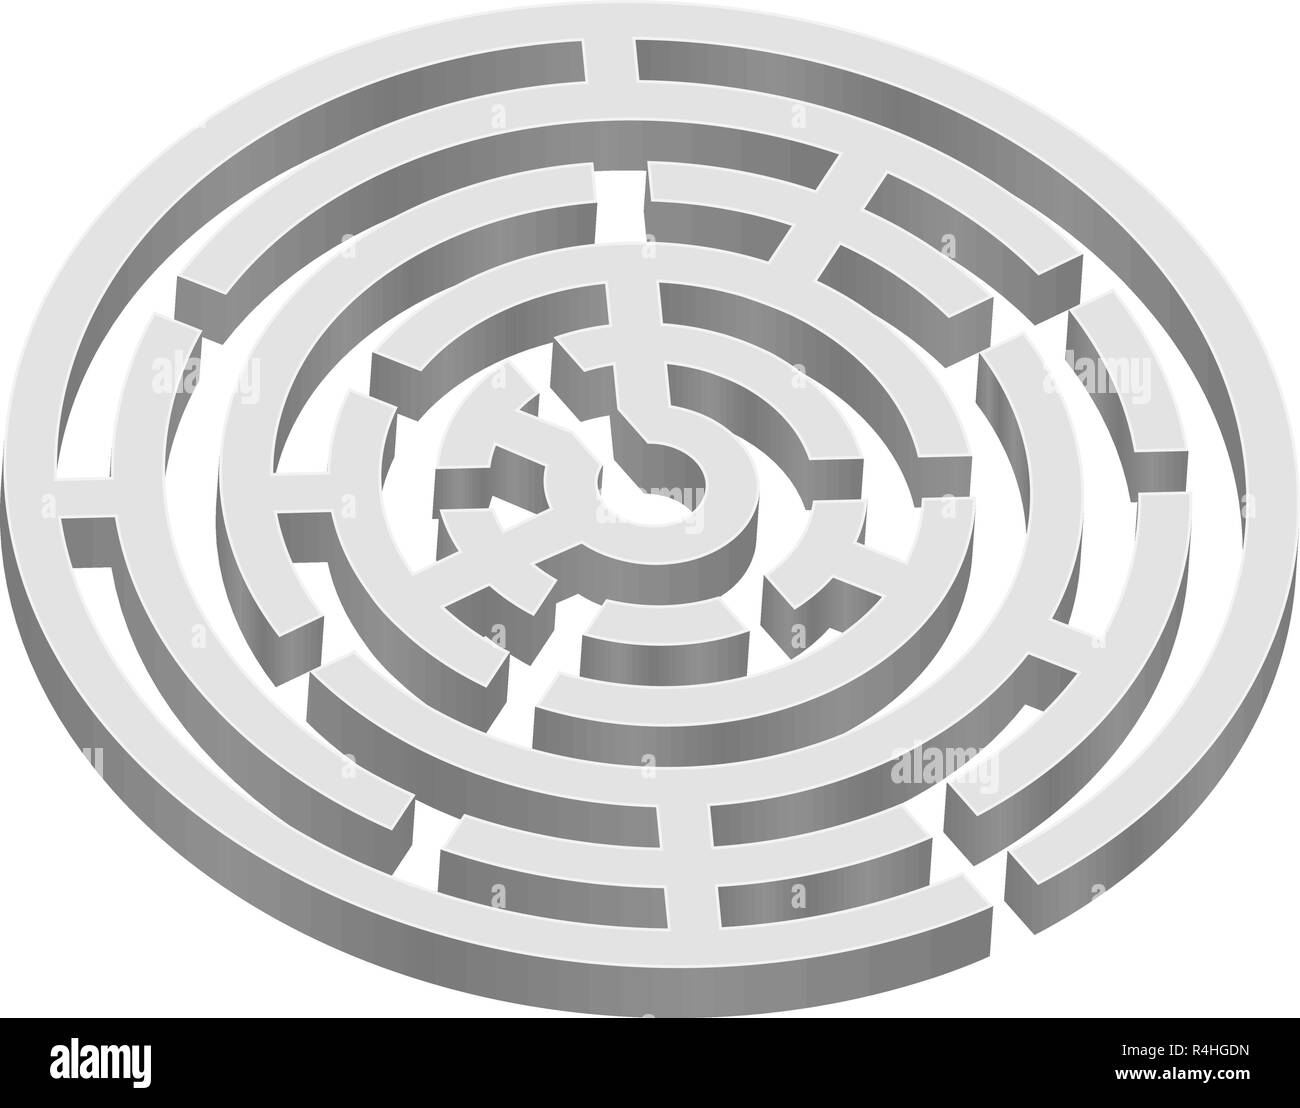 Labyrinthe 3d rond Illustration de Vecteur